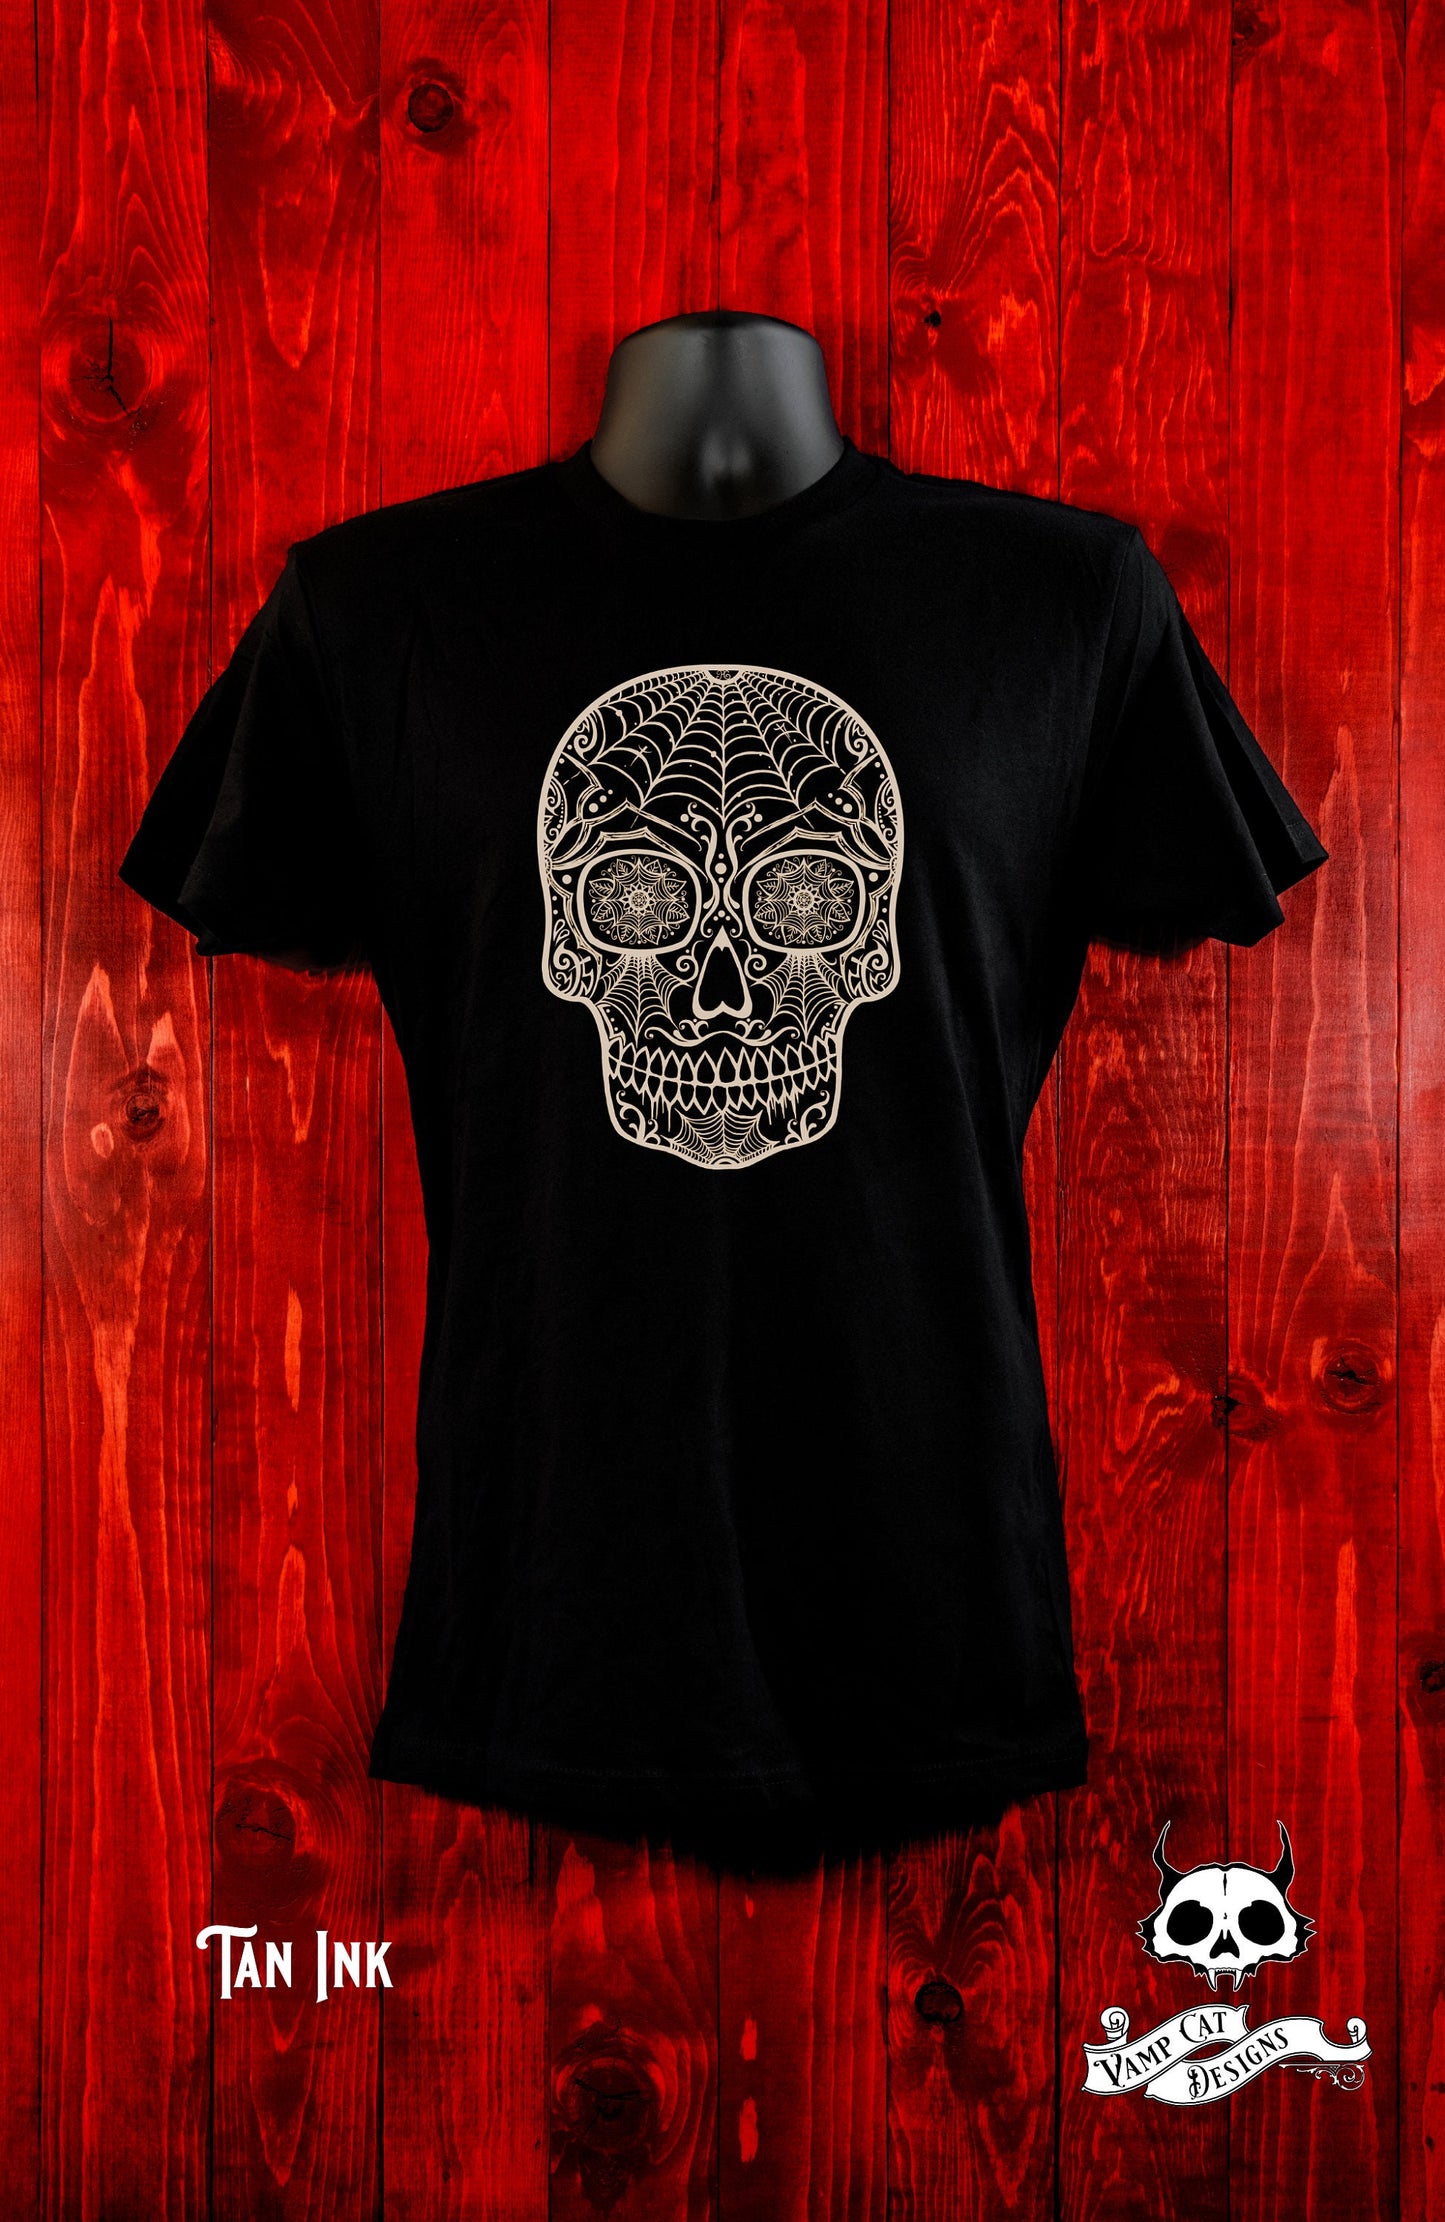 Dia De Los Muertos Shirt-Spider Sugar Skull-Unisex Tee-Men and Women's Tee-Calavera-Day of The Dead Skull Tee-Arachnid lovers-Large Skull